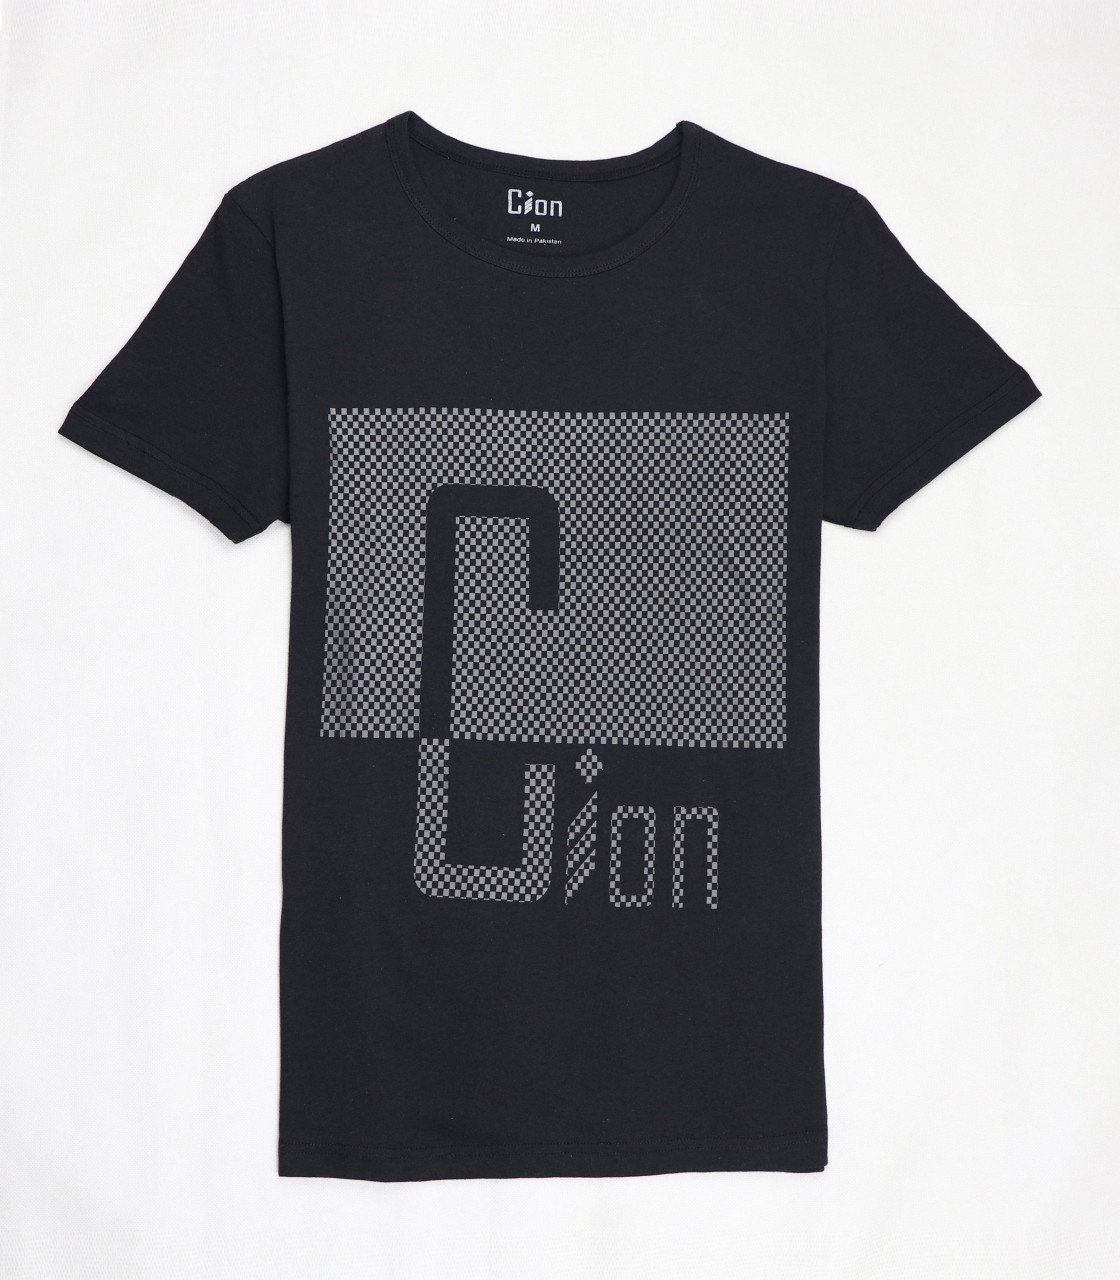 Black Cion